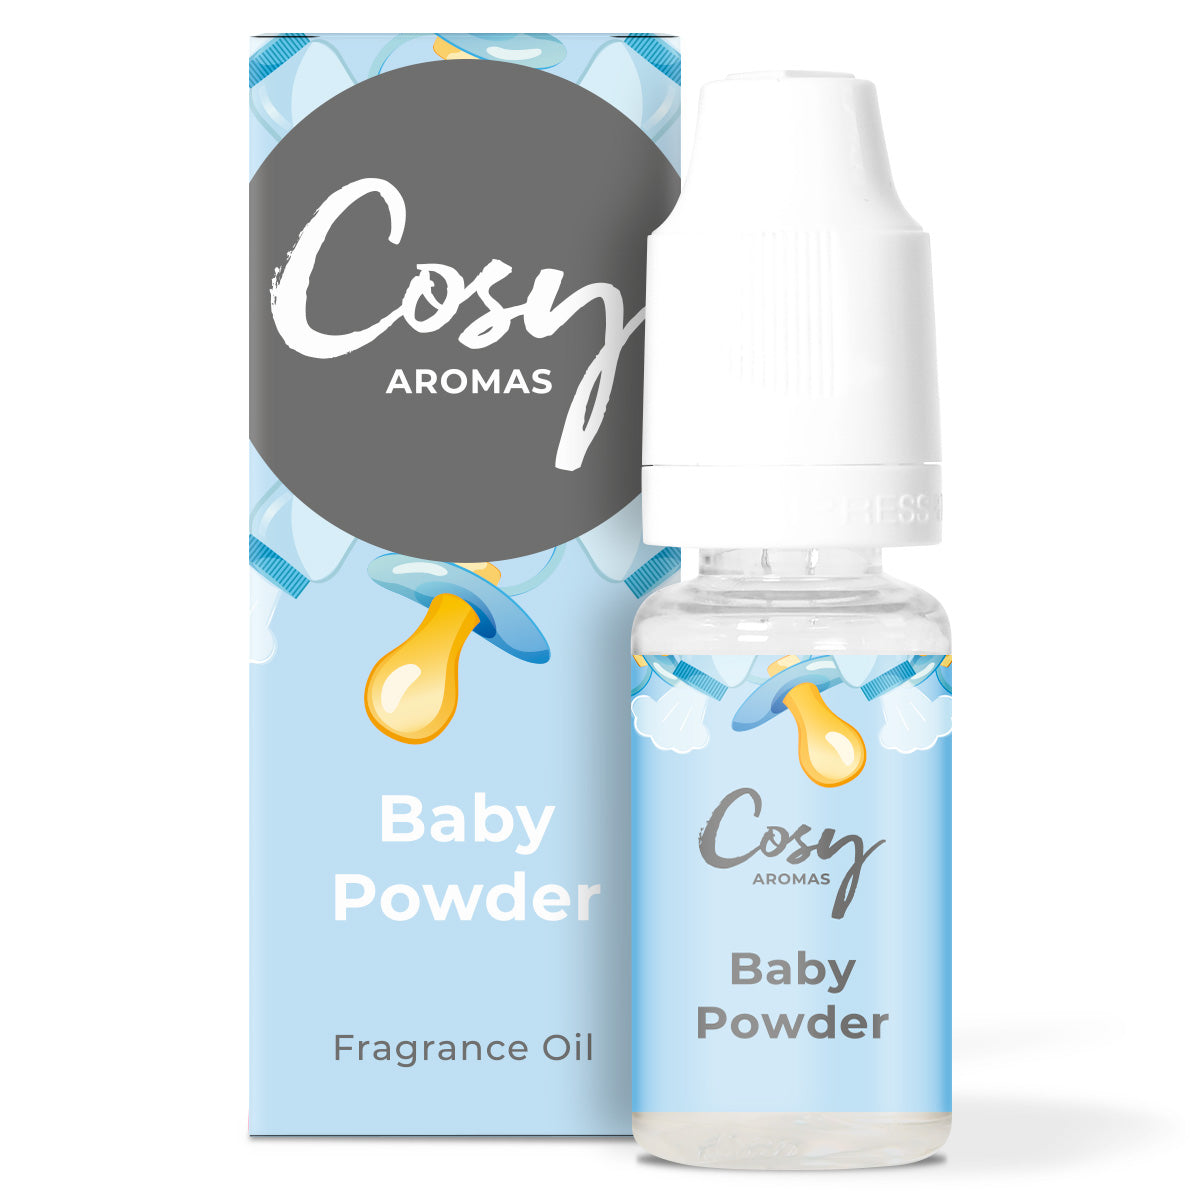 Baby Powder Fragrance Oil, Baby Powder Essential Oil